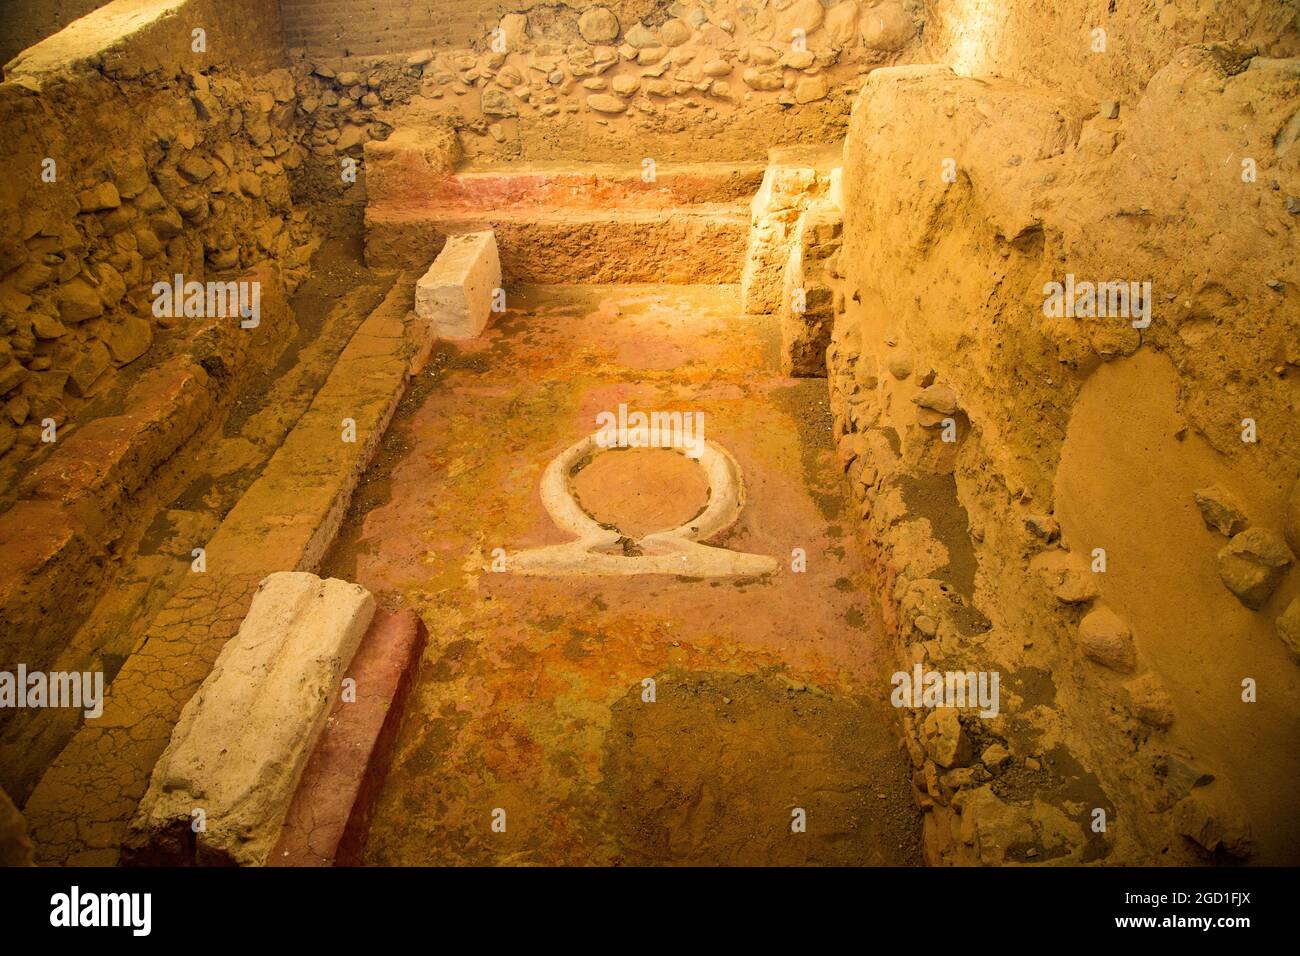 Muros, alrededores, espacios y detalles del yacimiento arqueológico del Templo Tartesiano de Cancho Roano, con vestigios de la Atlántida Foto de stock